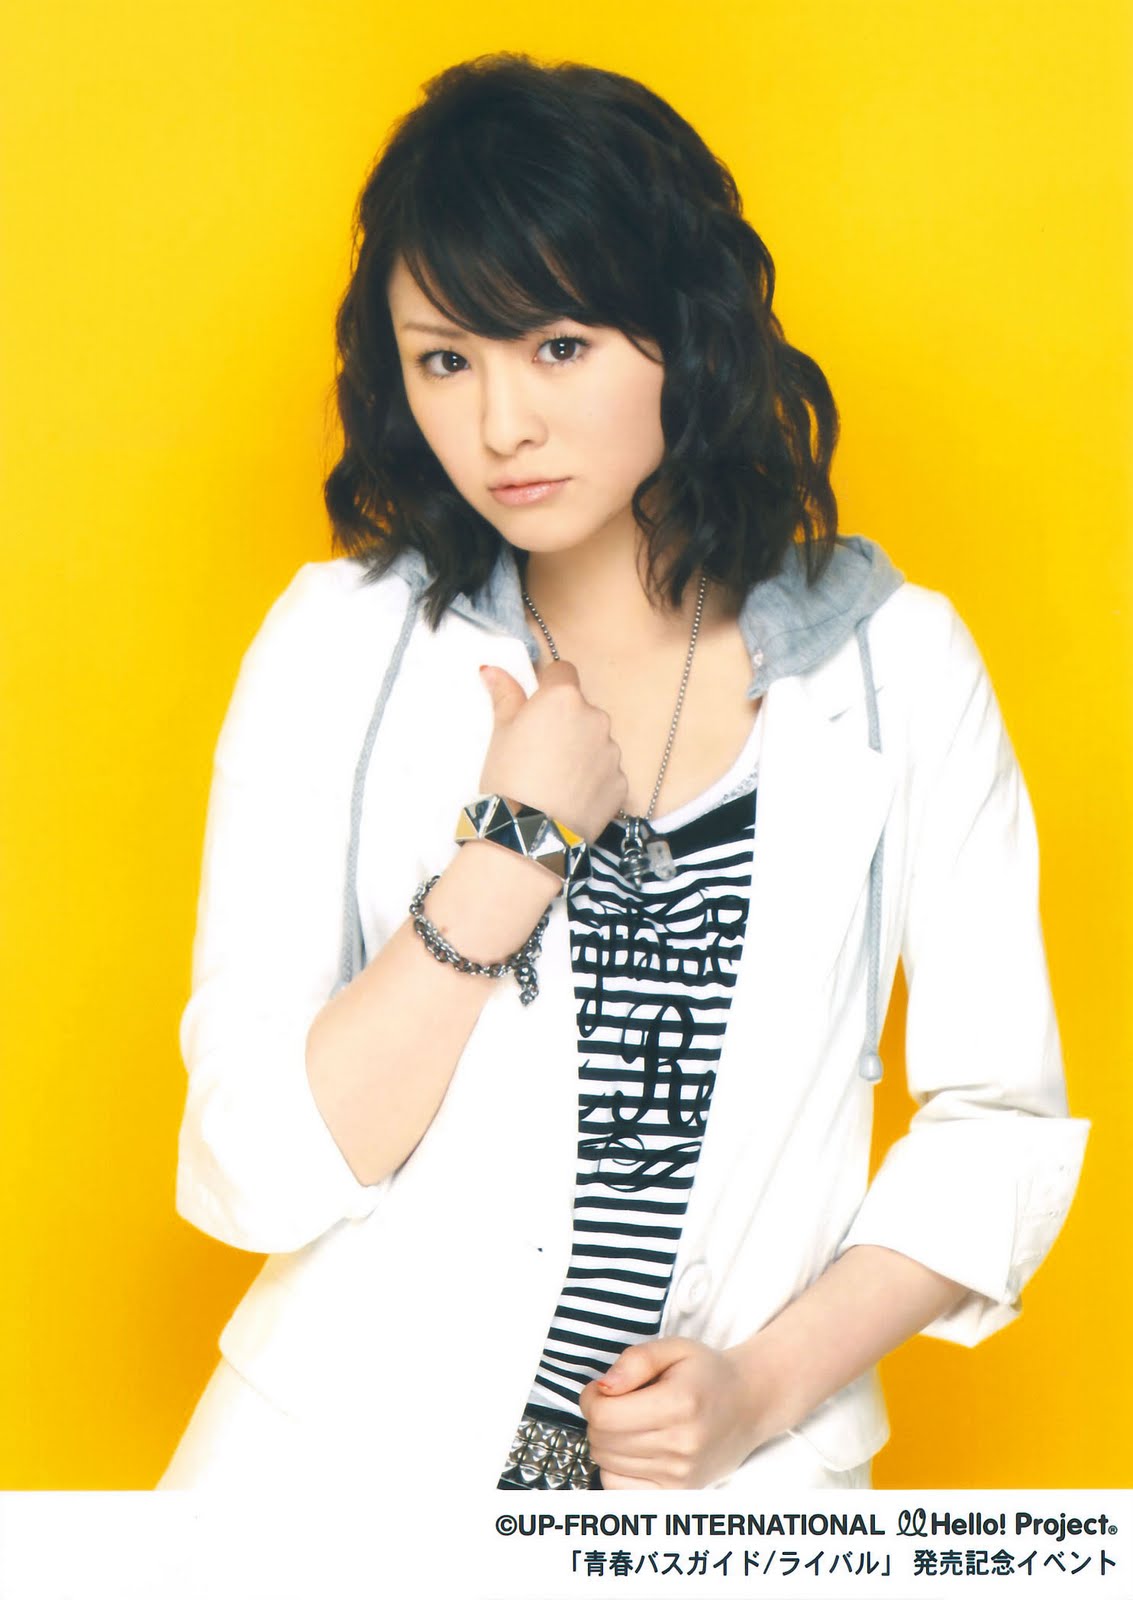 Kira's Blog: Picspam - Sugaya Risako